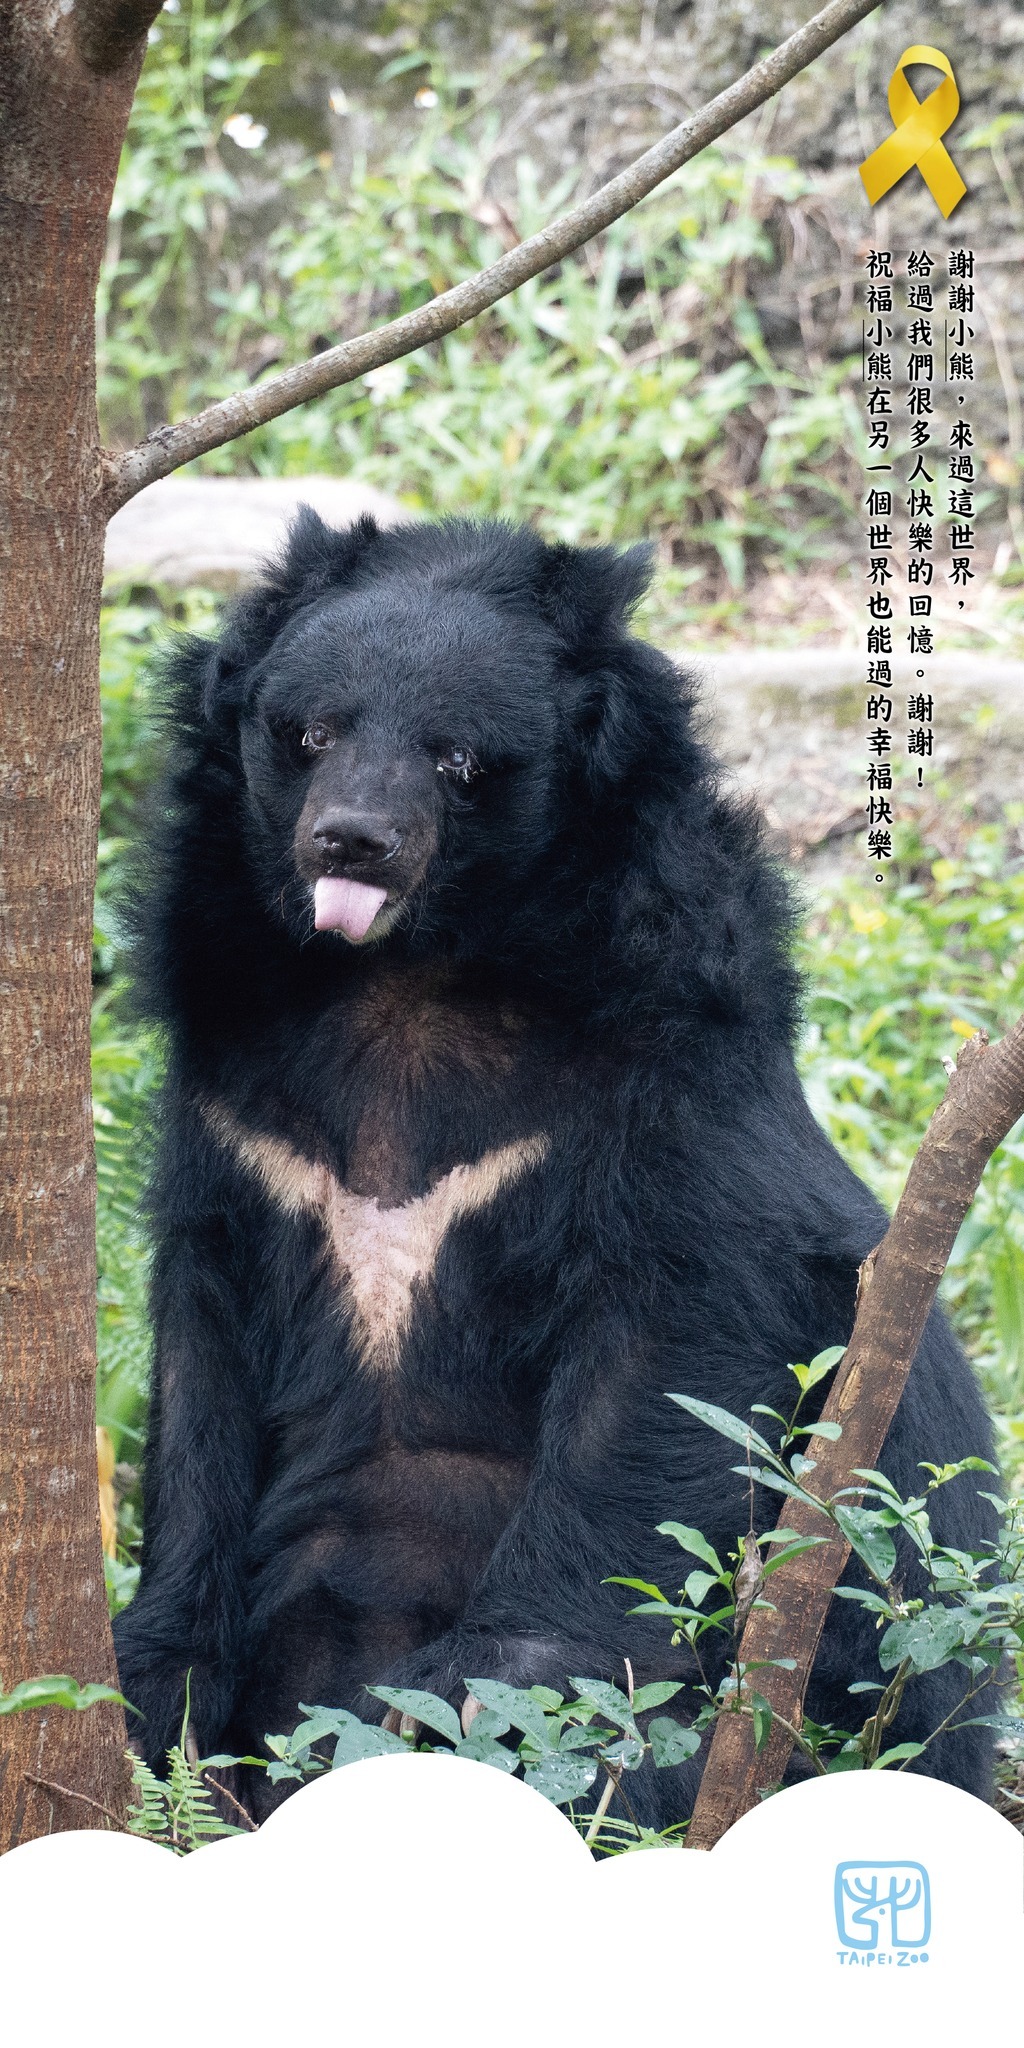 動物園界最年長黑熊  北市動物園34歲「小熊」辭世